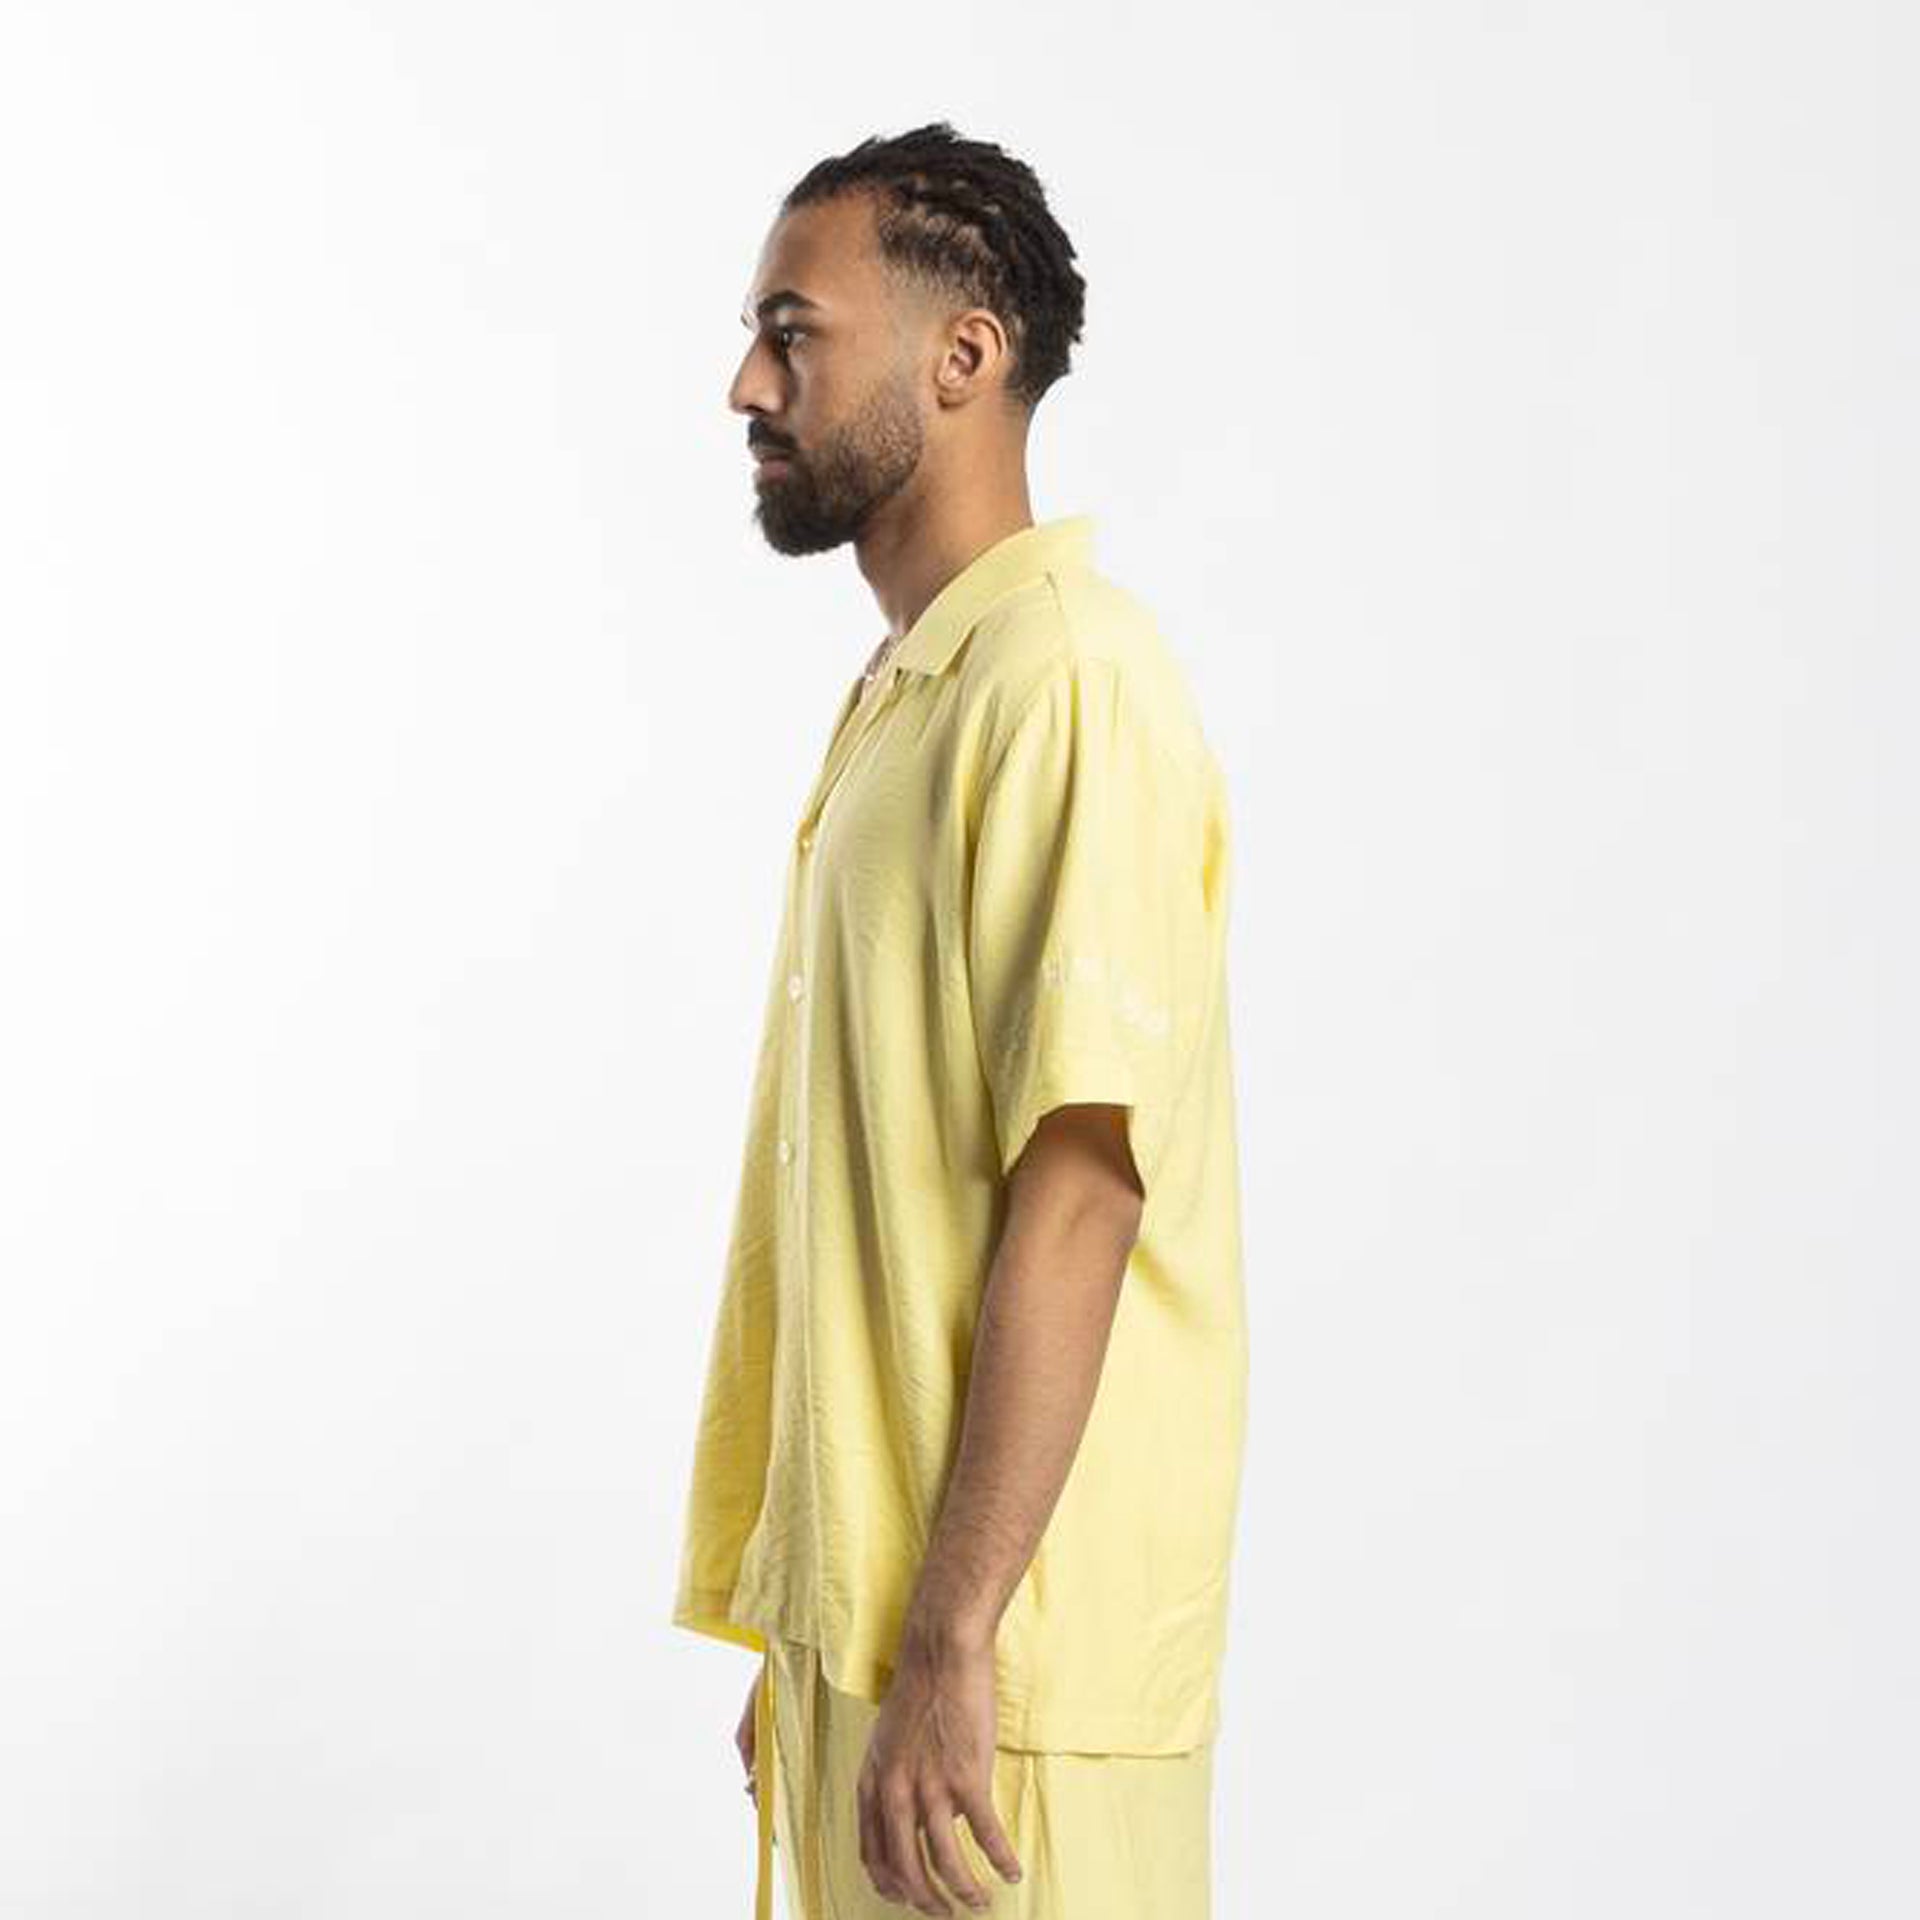 Light Yellow Linen Short-Sleeve Shirt From Hajruss